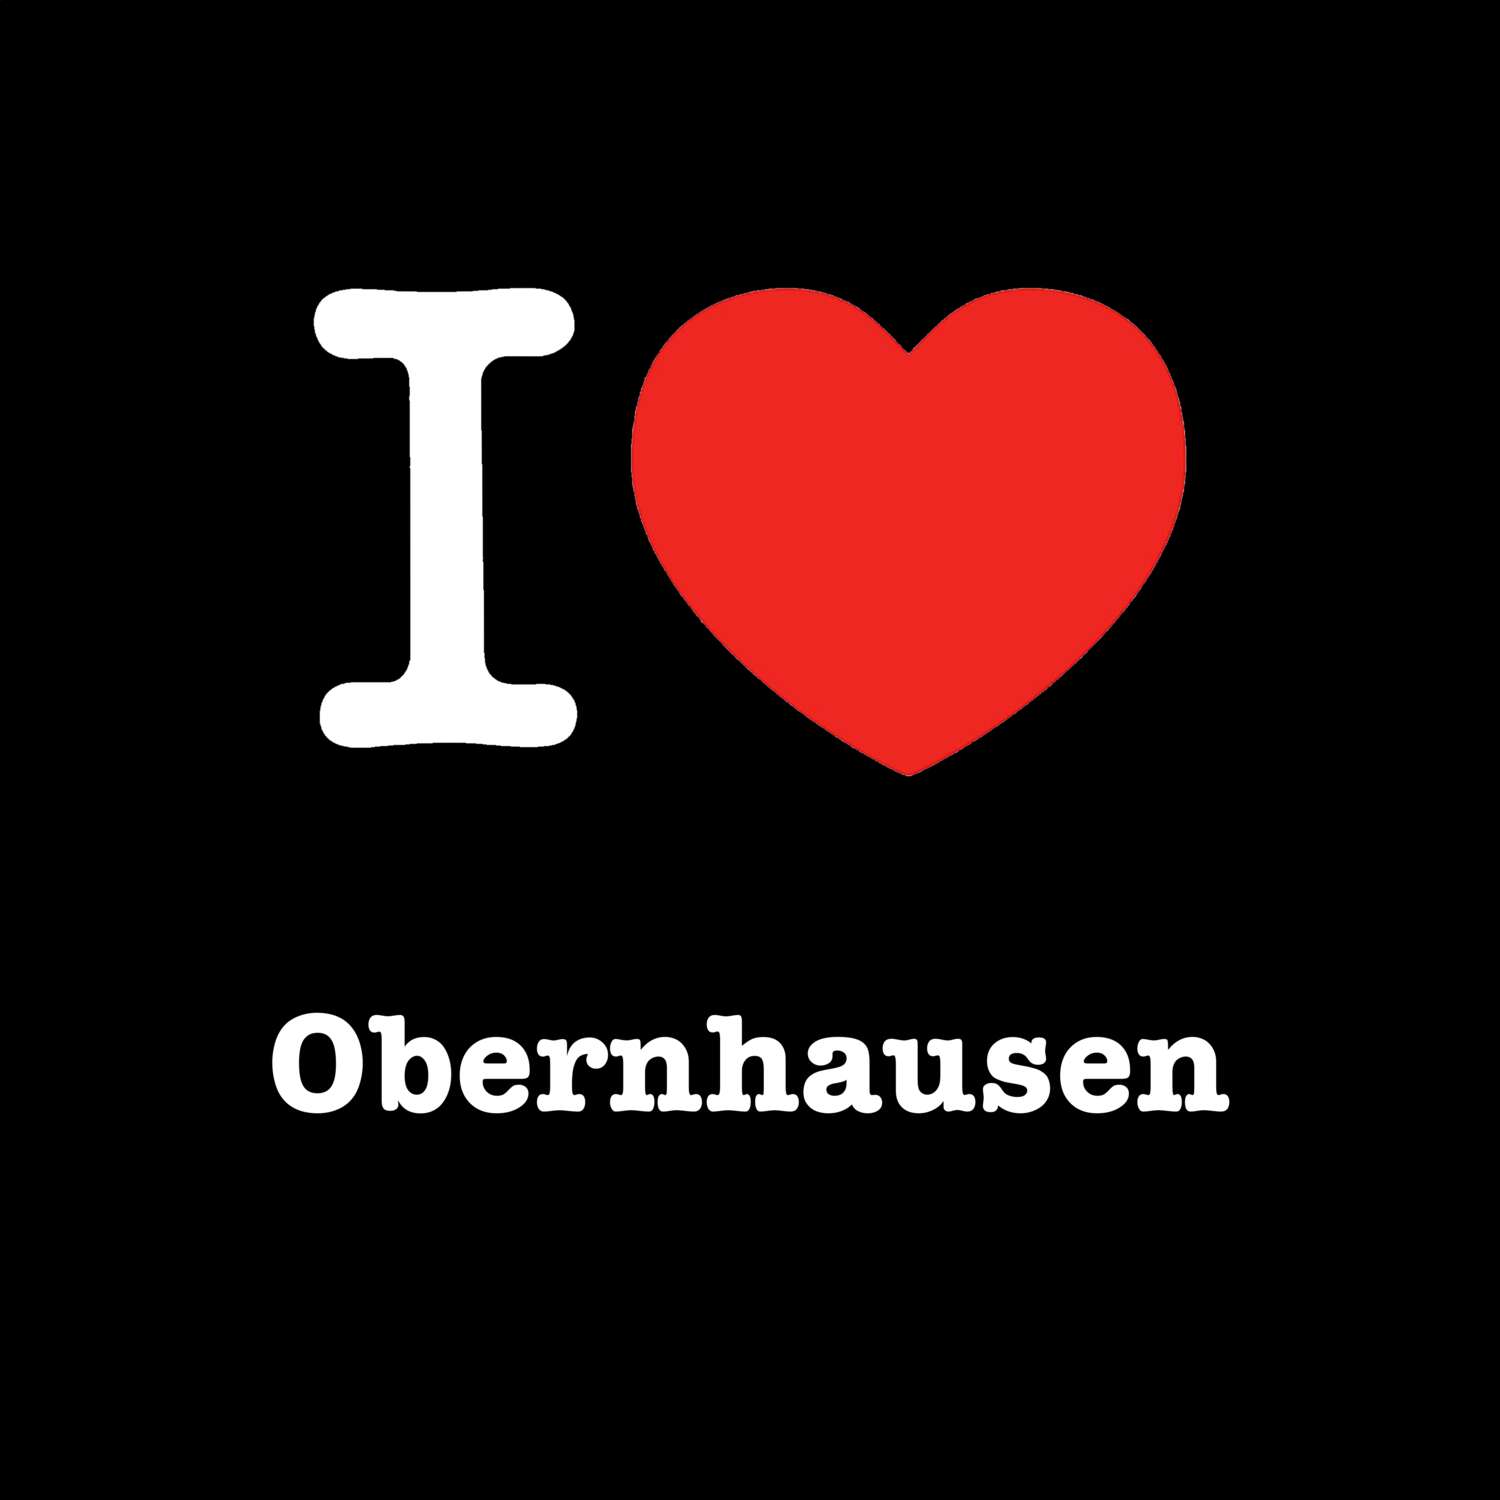 Obernhausen T-Shirt »I love«